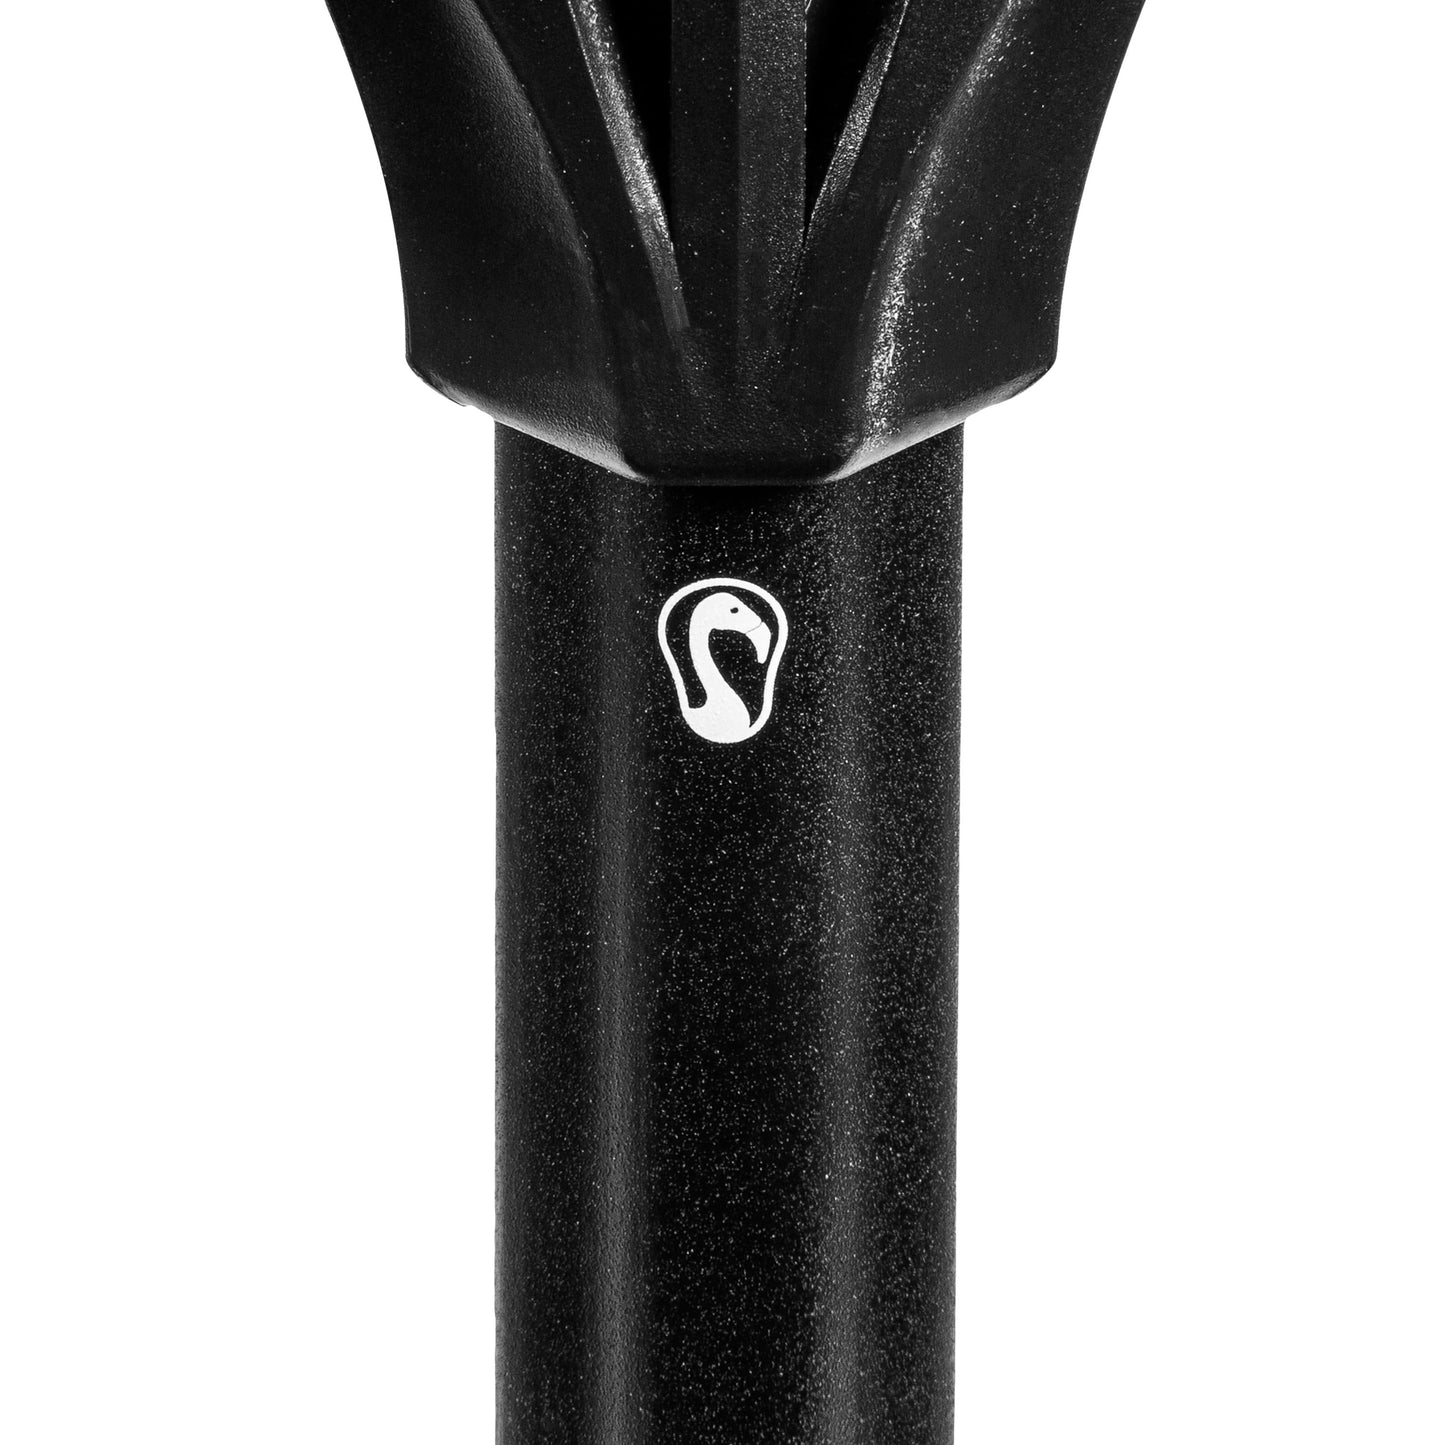 Carbon Pro Defensive Complete Lacrosse Stick | 60" | Black Signature Lacrosse